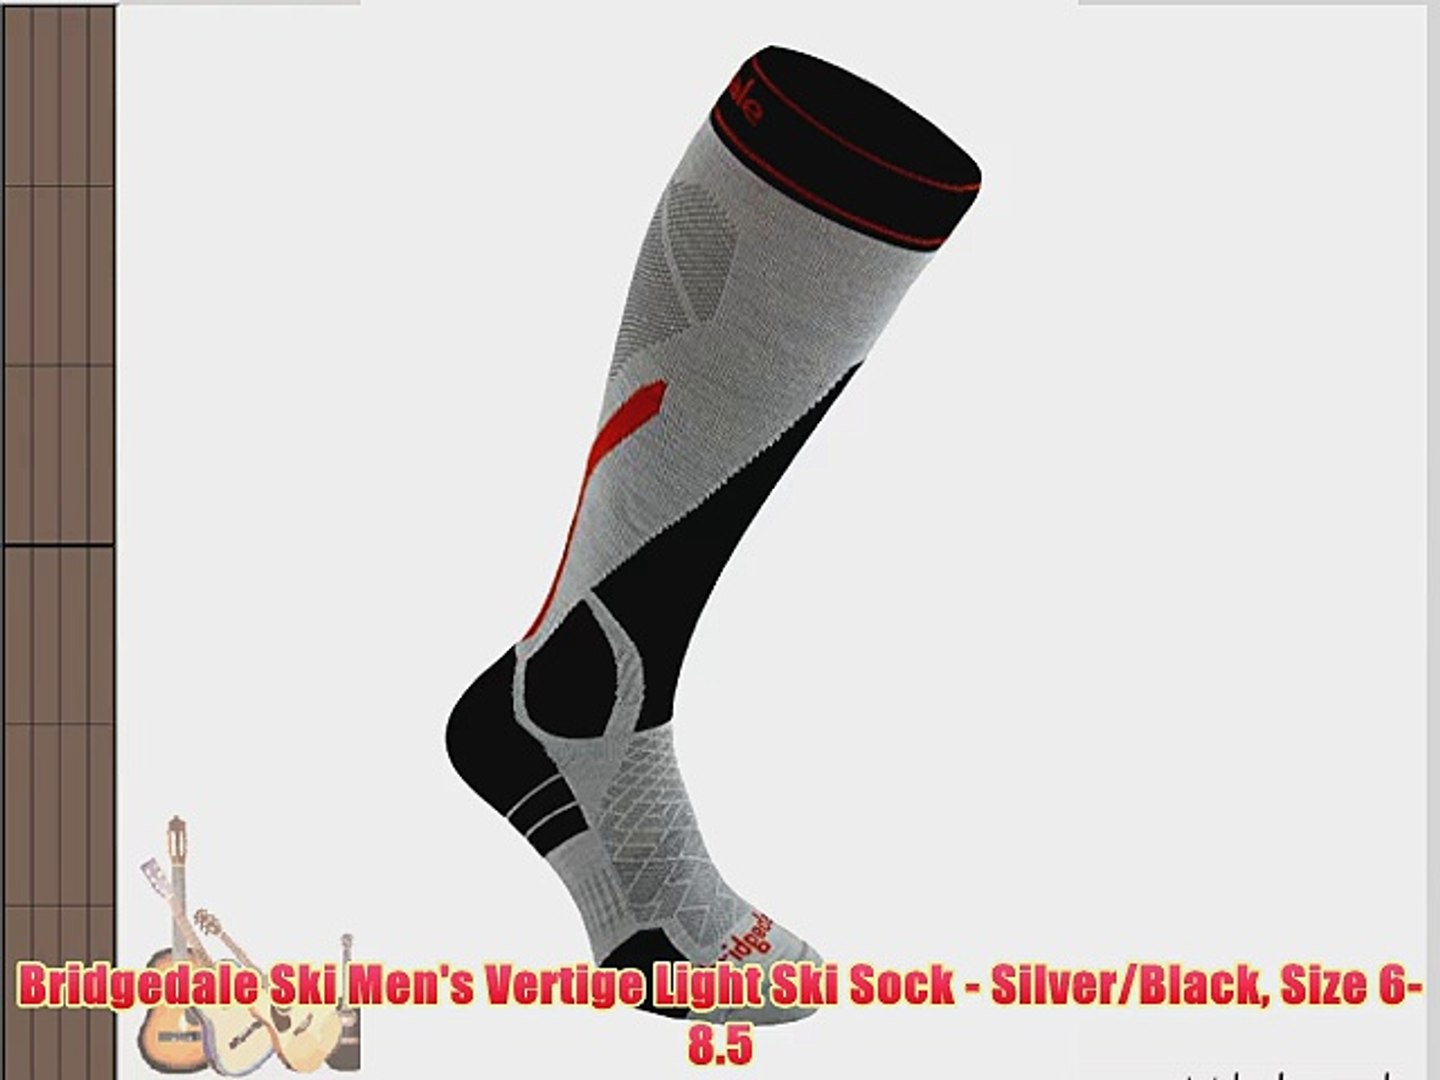 ⁣Bridgedale Ski Men's Vertige Light Ski Sock - Silver/Black Size 6-8.5